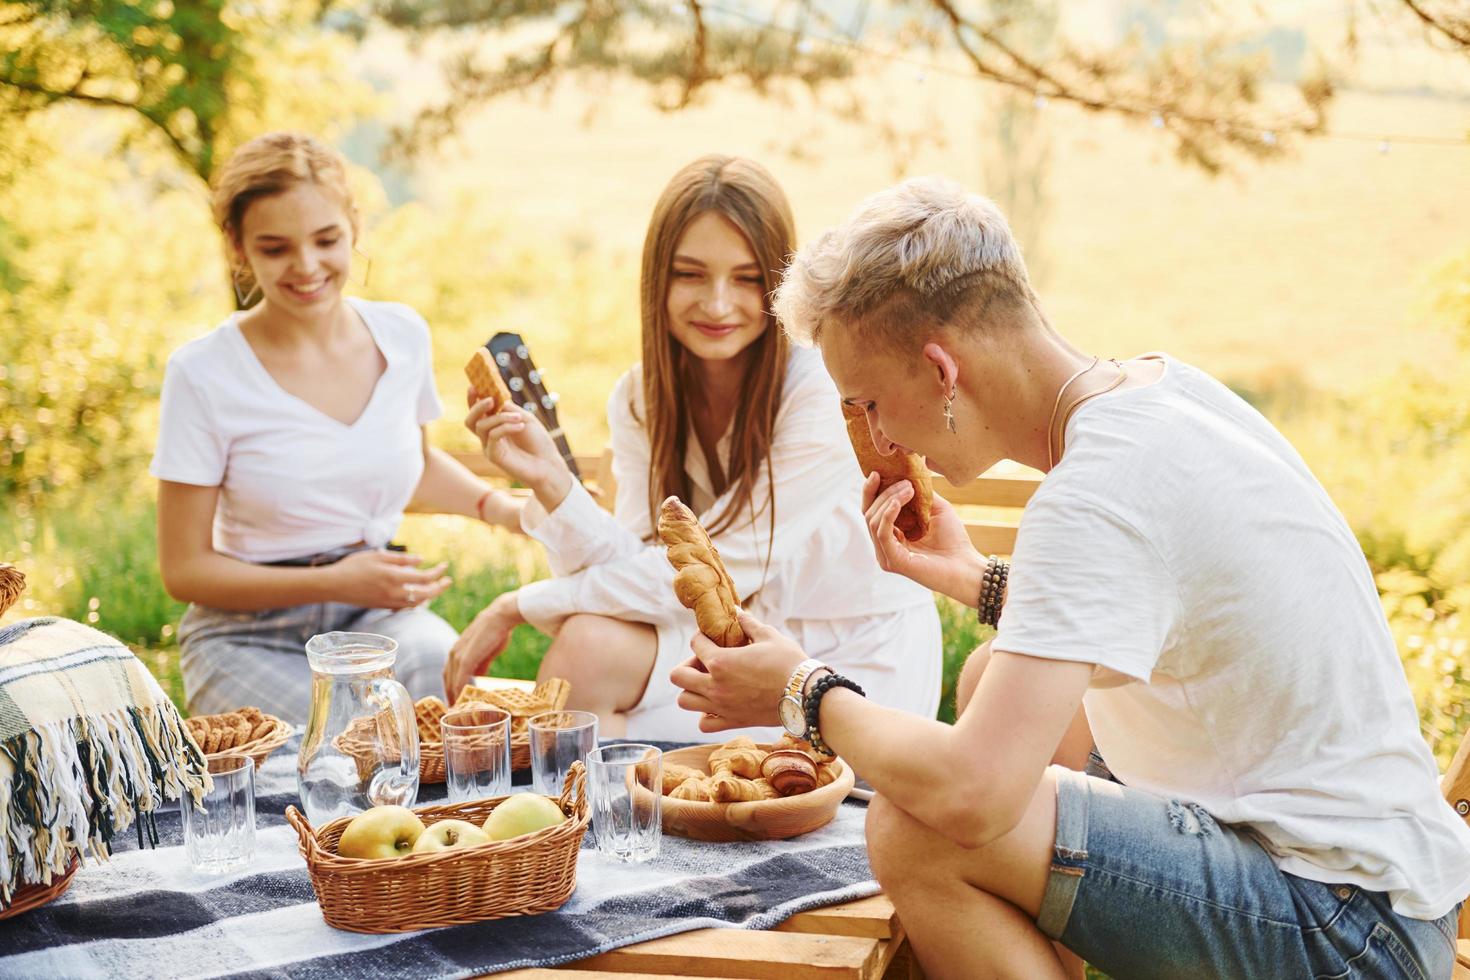 seduta di picnic tavolo. gruppo di giovane persone avere vacanza all'aperto nel il foresta. concezione di fine settimana e amicizia foto